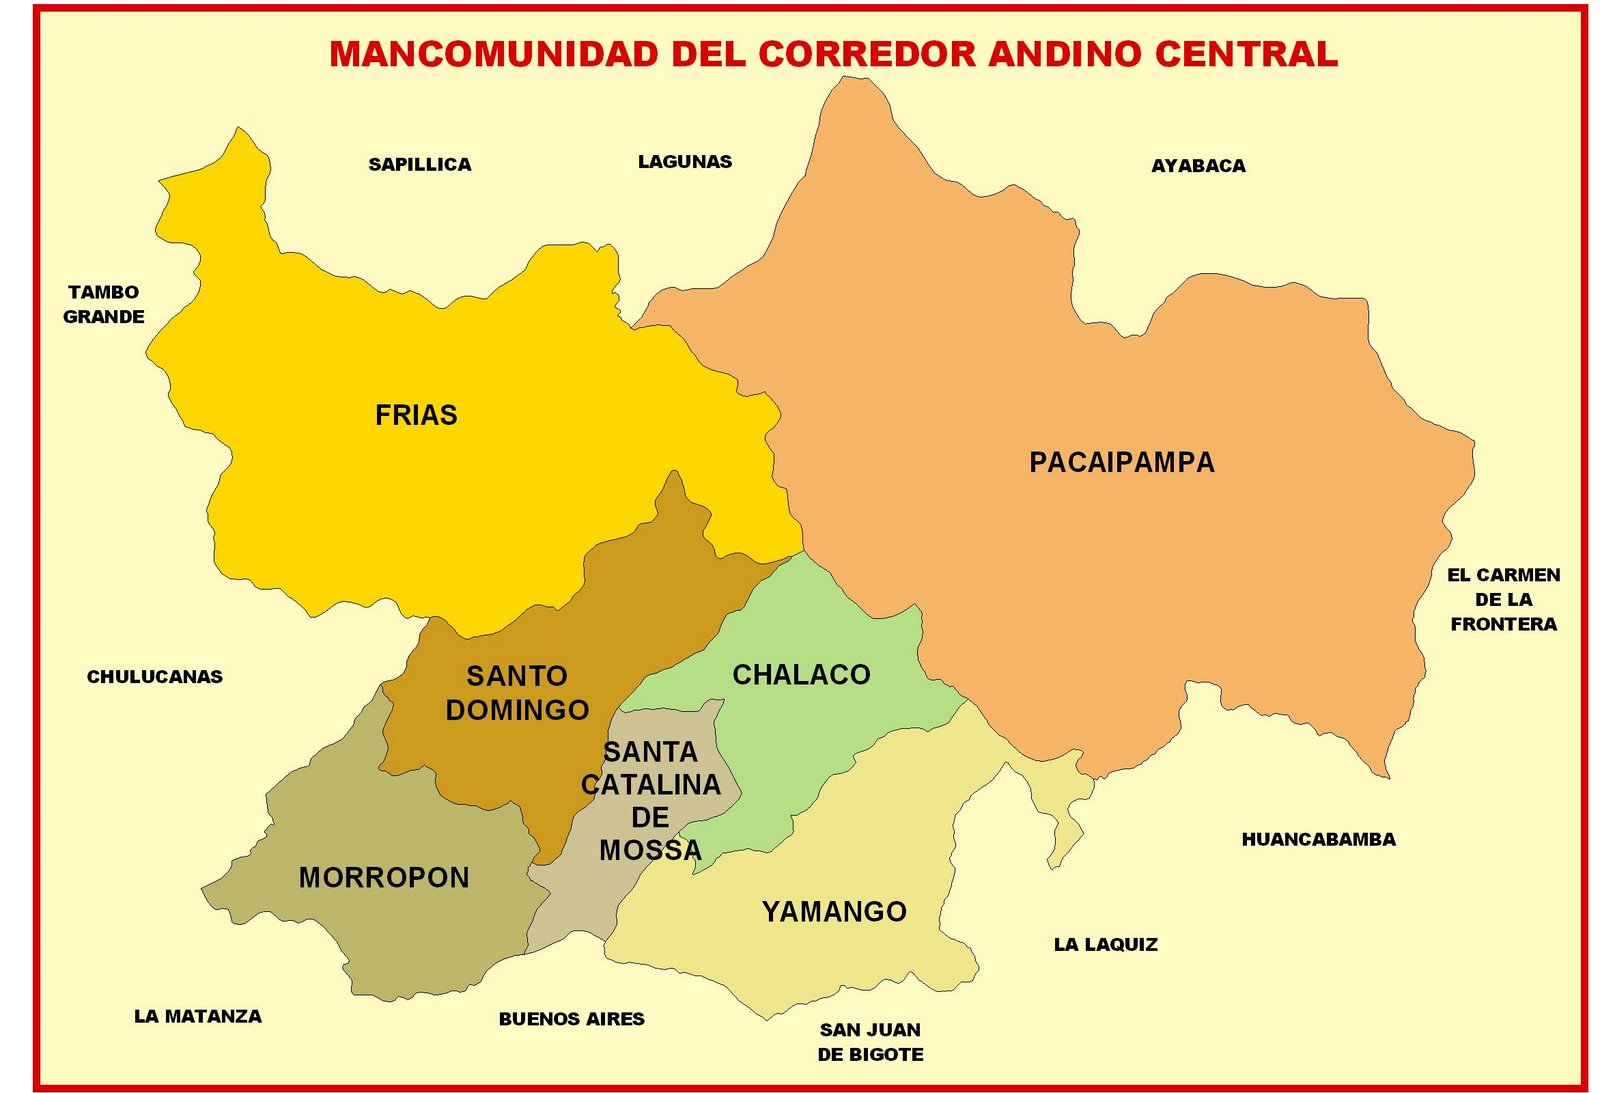 MANCOMUNIDAD DEL CORREDOR ANDINO CENTRAL